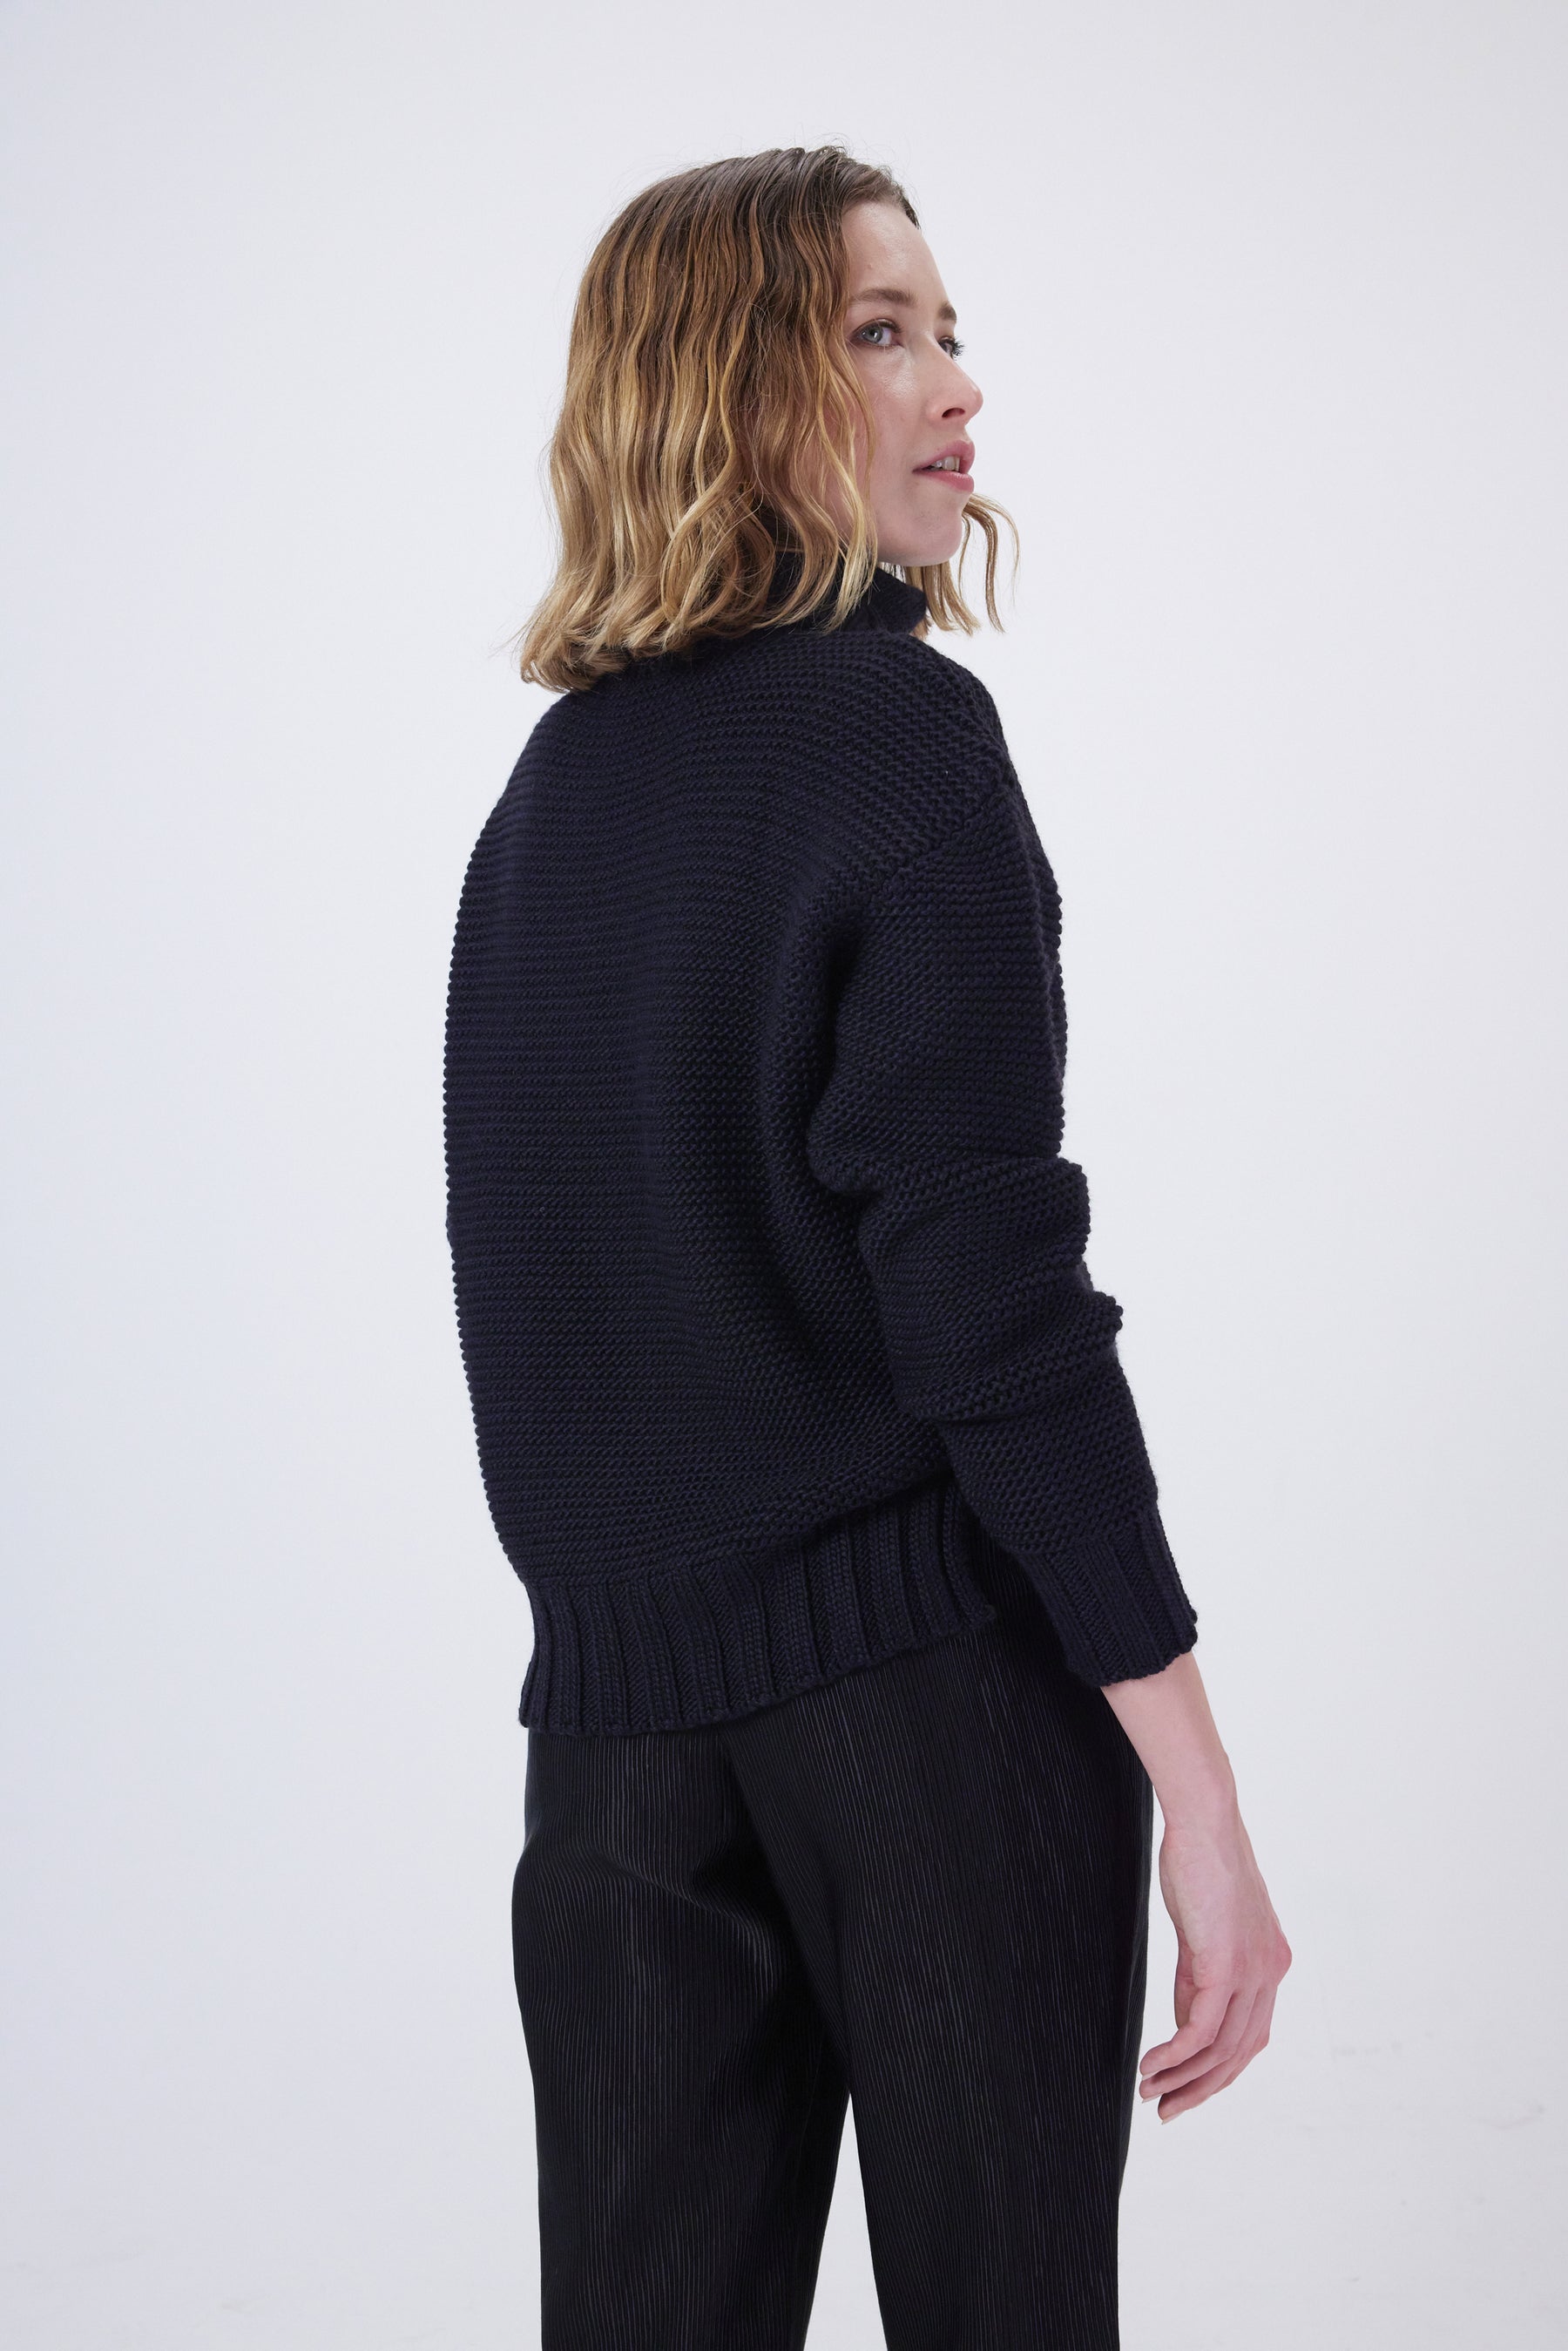 Bobbi sweater in black knit